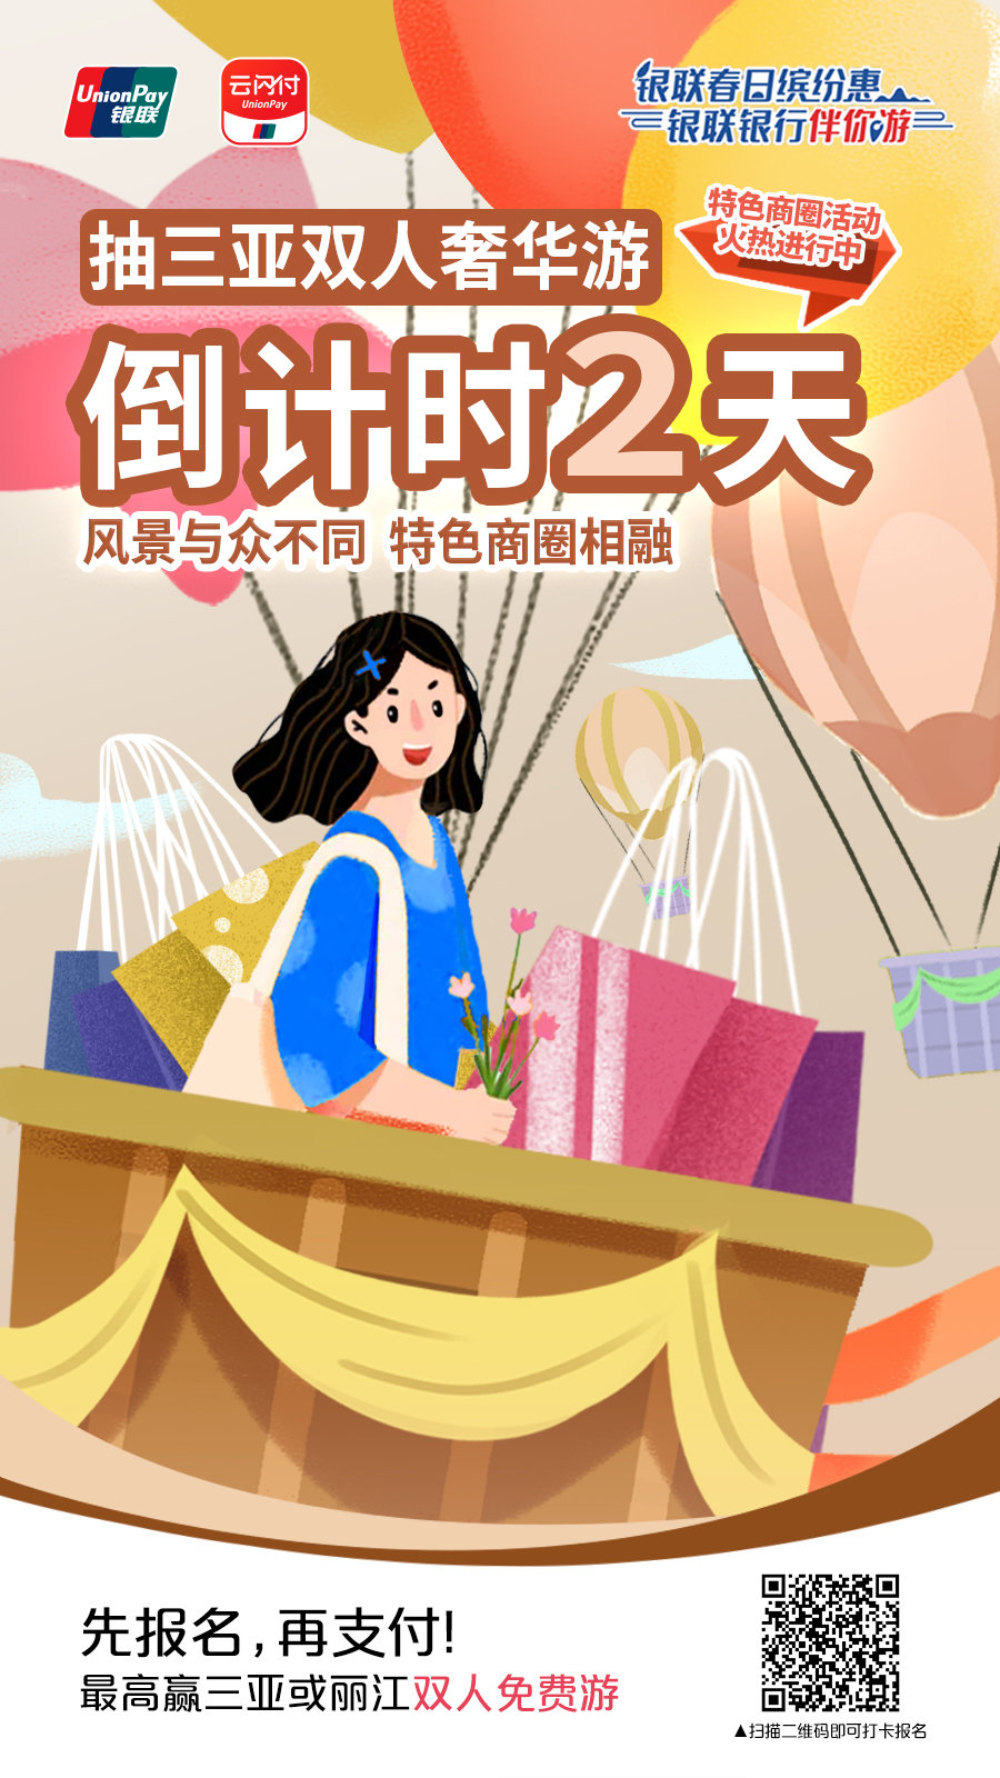 12张中国银联的插画营销海报